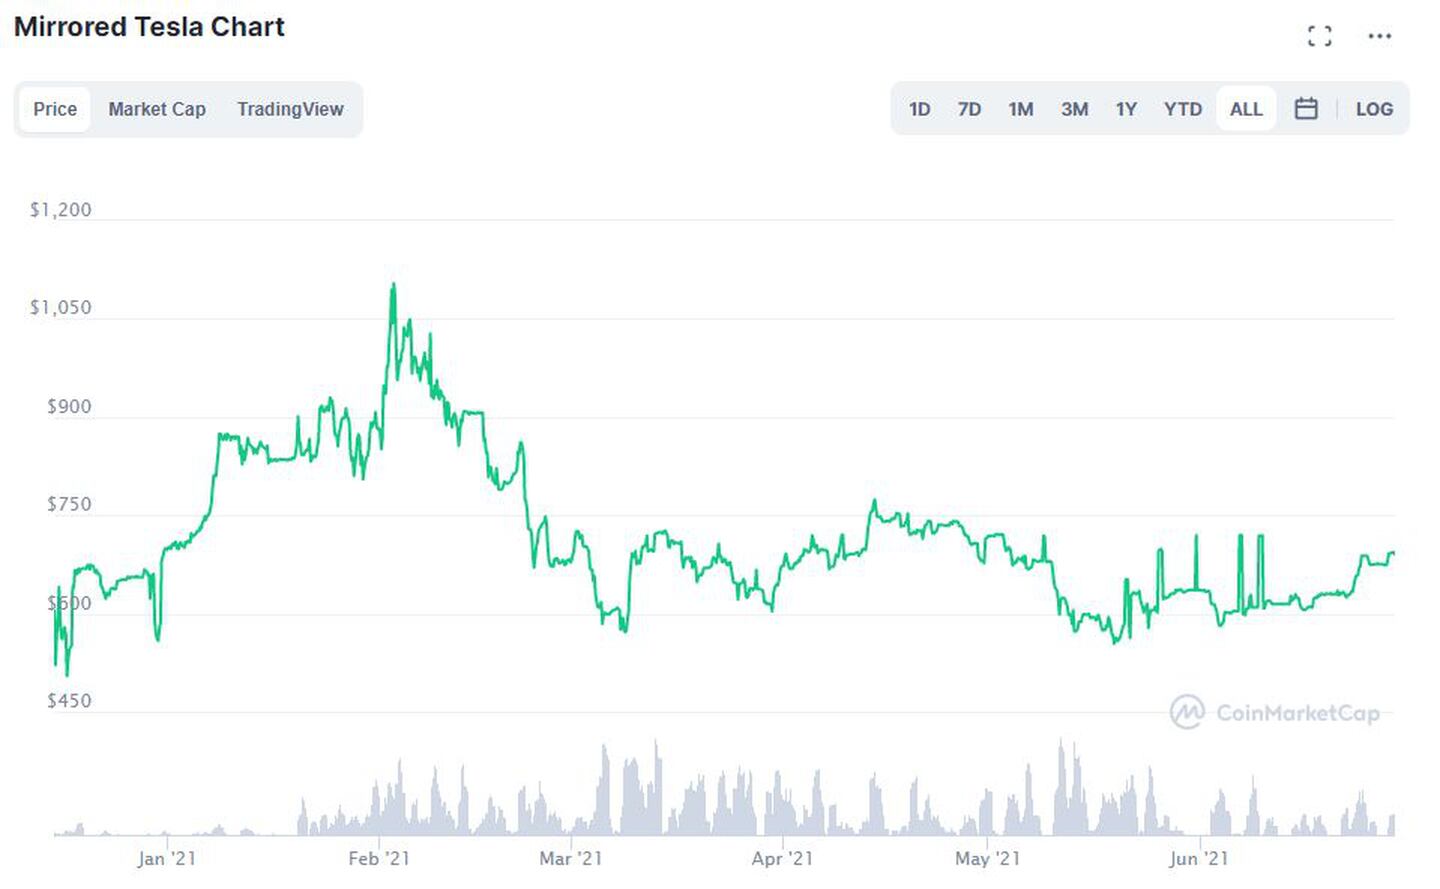 El precio de Mirrored Tesla en CoinMarketCap.com fue casi US$6 más alto que el nivel de US$684 por el que se negociaban las acciones reales.dfd